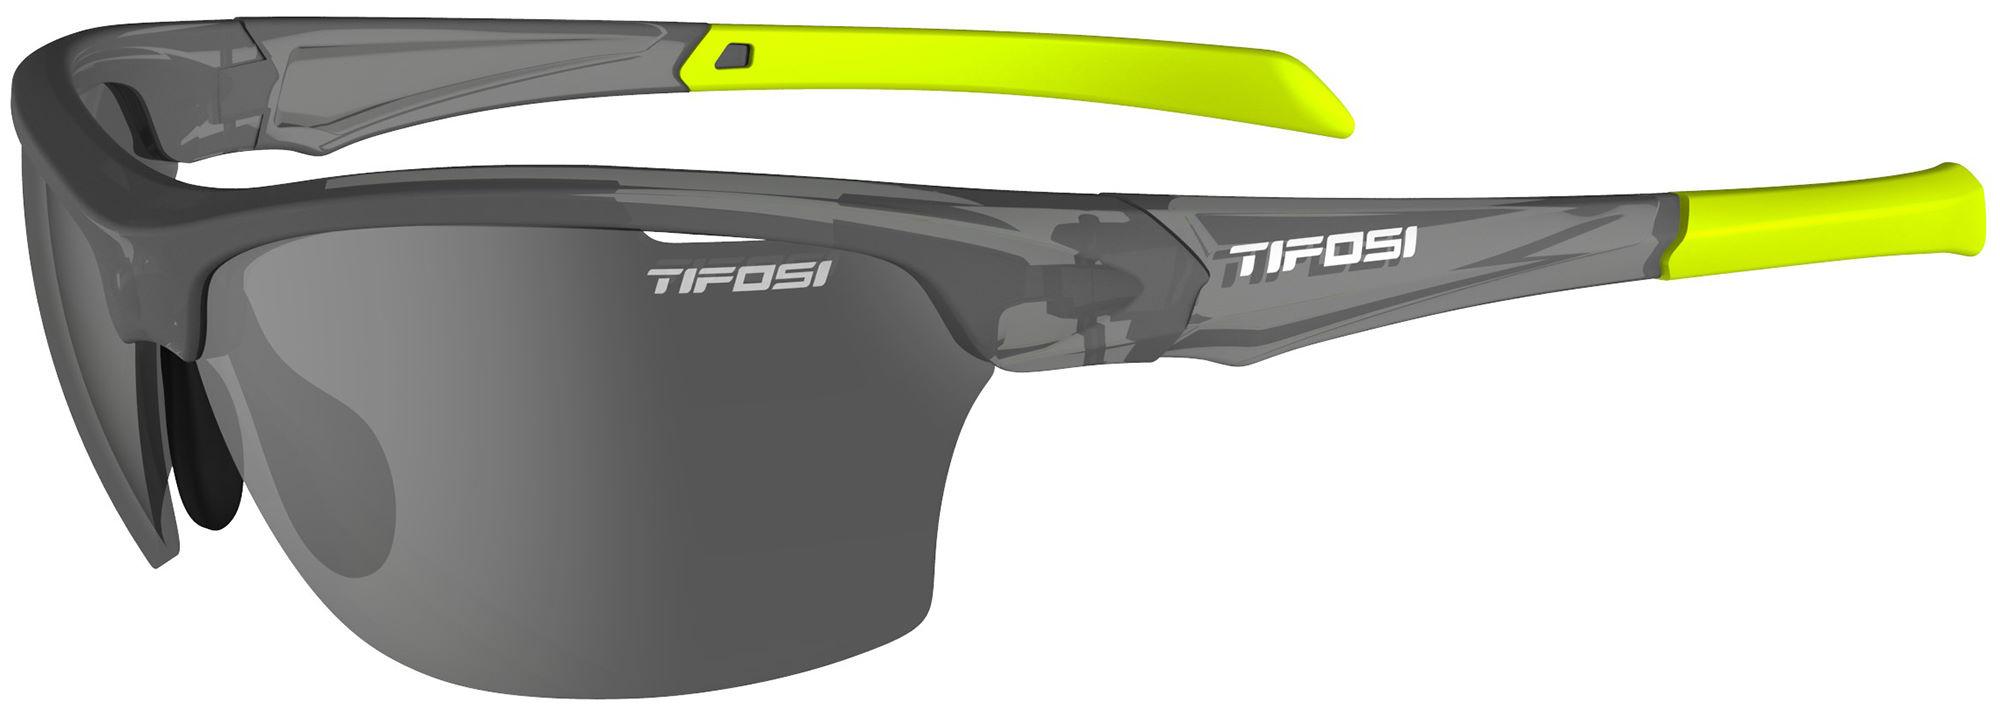 Image of Tifosi Eyewear Intense Single Lens Sunglasses - Matte Smoke